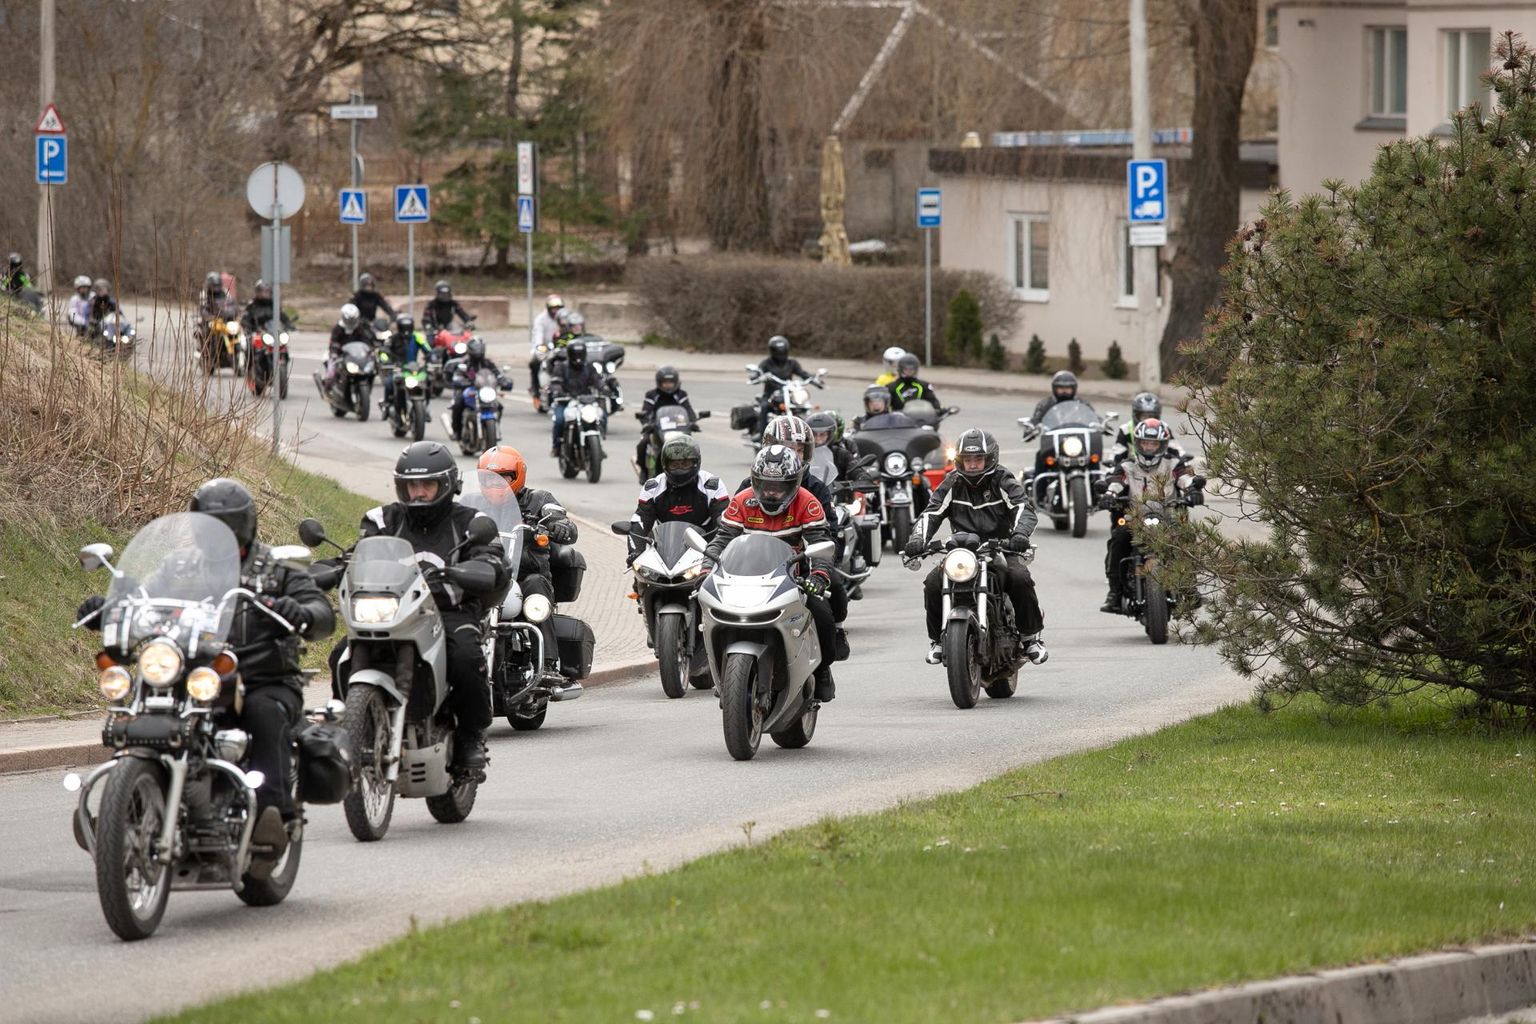 Eestis on üksjagu motoklubisid ja -ühinguid, mis korraldavad üritusi, kus saab oma raudratsut teistega võrrelda.